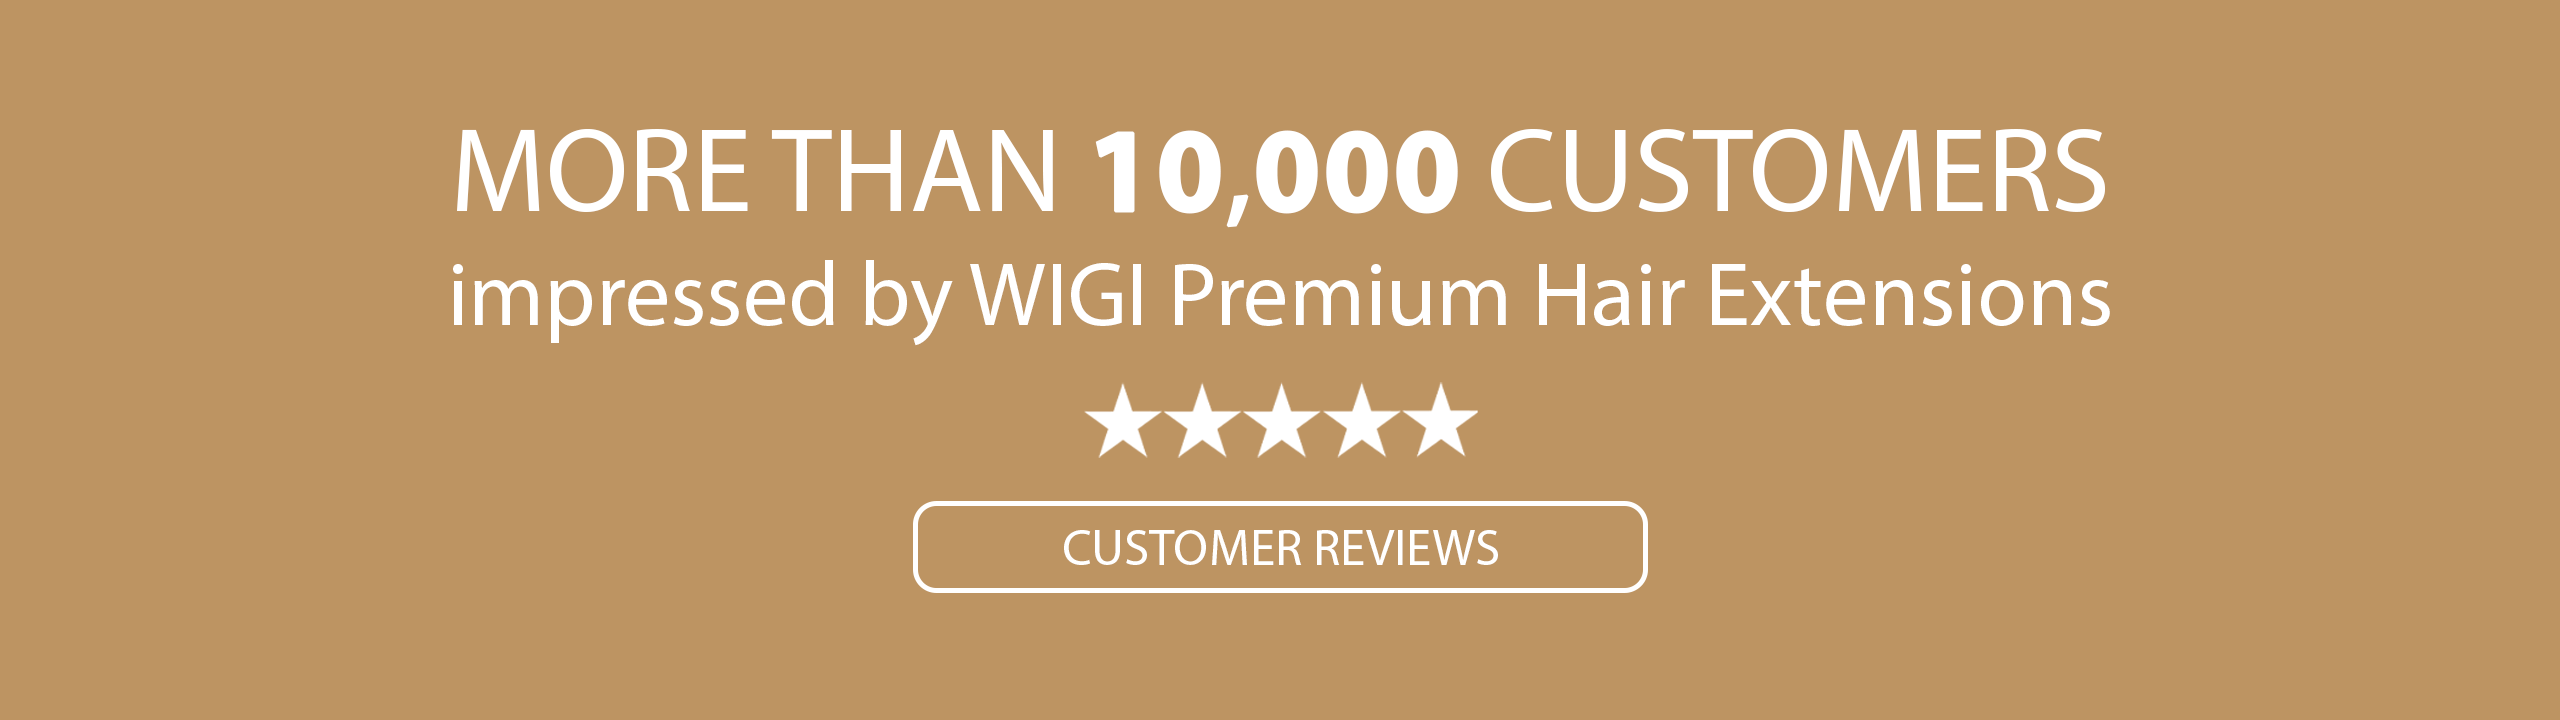 WIGI Premium Hair extensions customer review